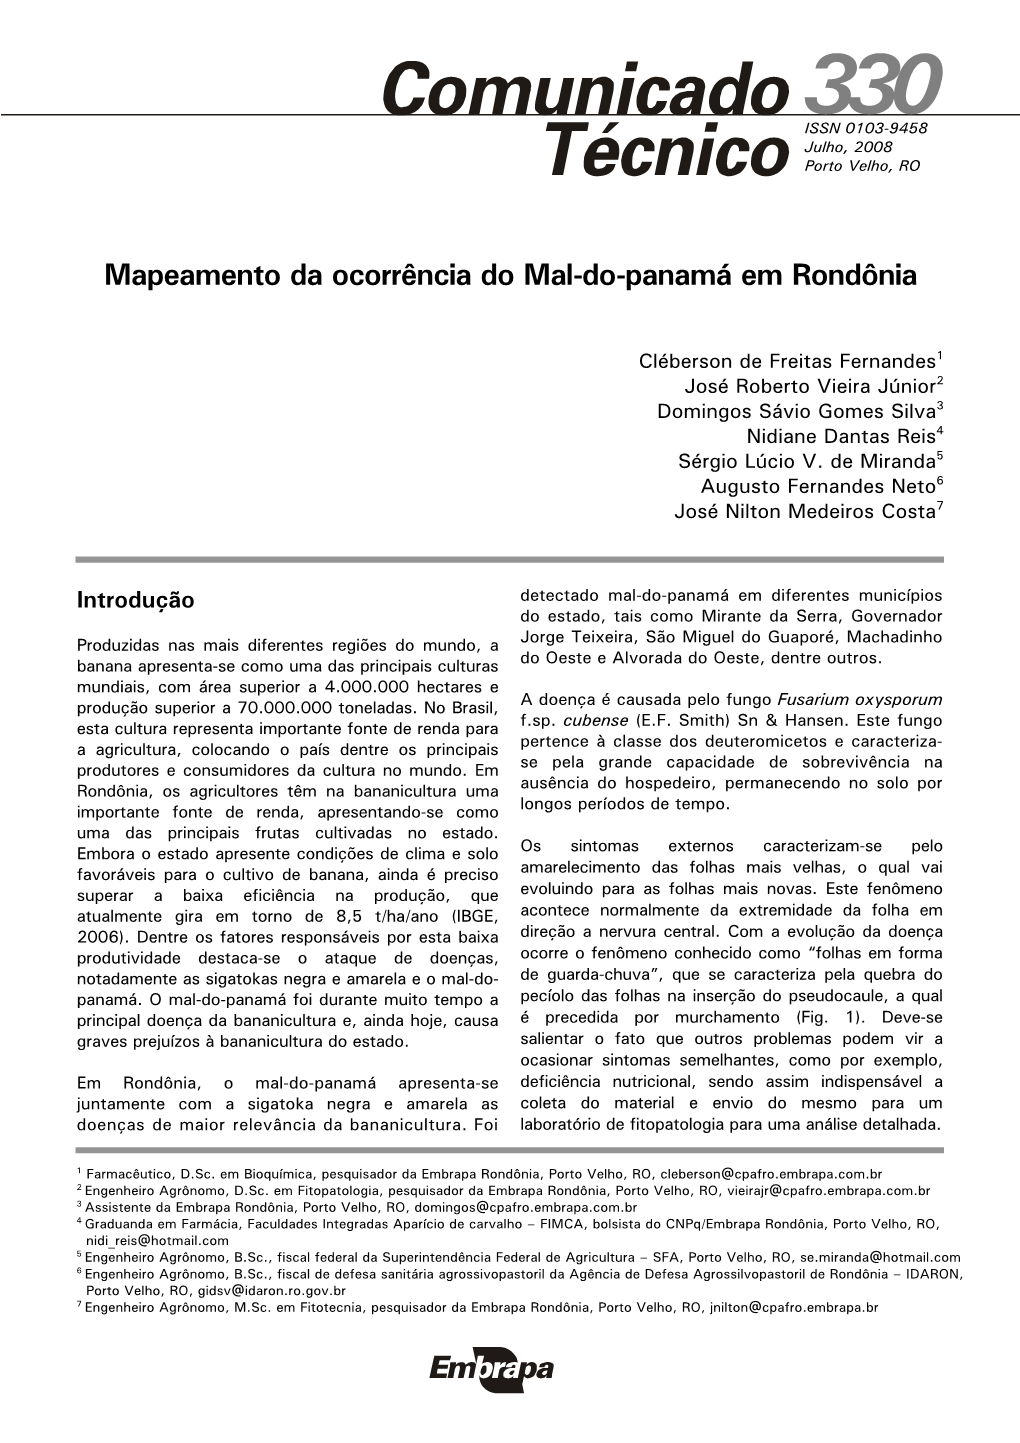 Mapeamento Da Ocorrência Do Mal-Do-Panamá Em Rondônia